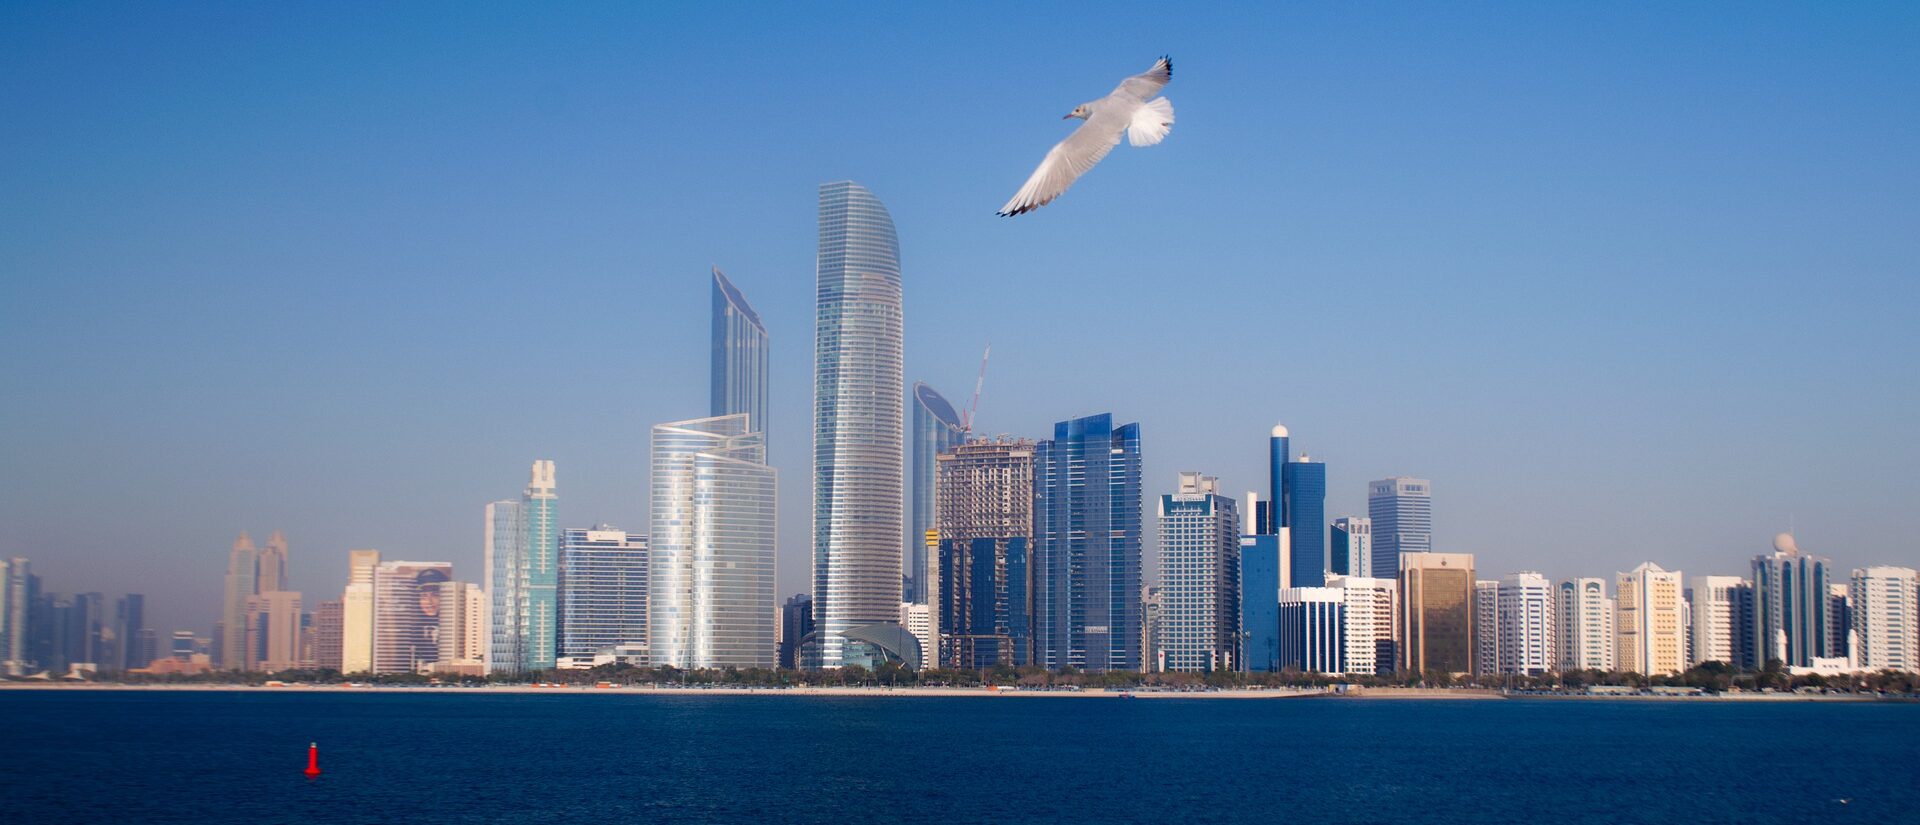 La ville d'Abou Dhabi, la capitale des Emirats arabes unis | © Pixabay